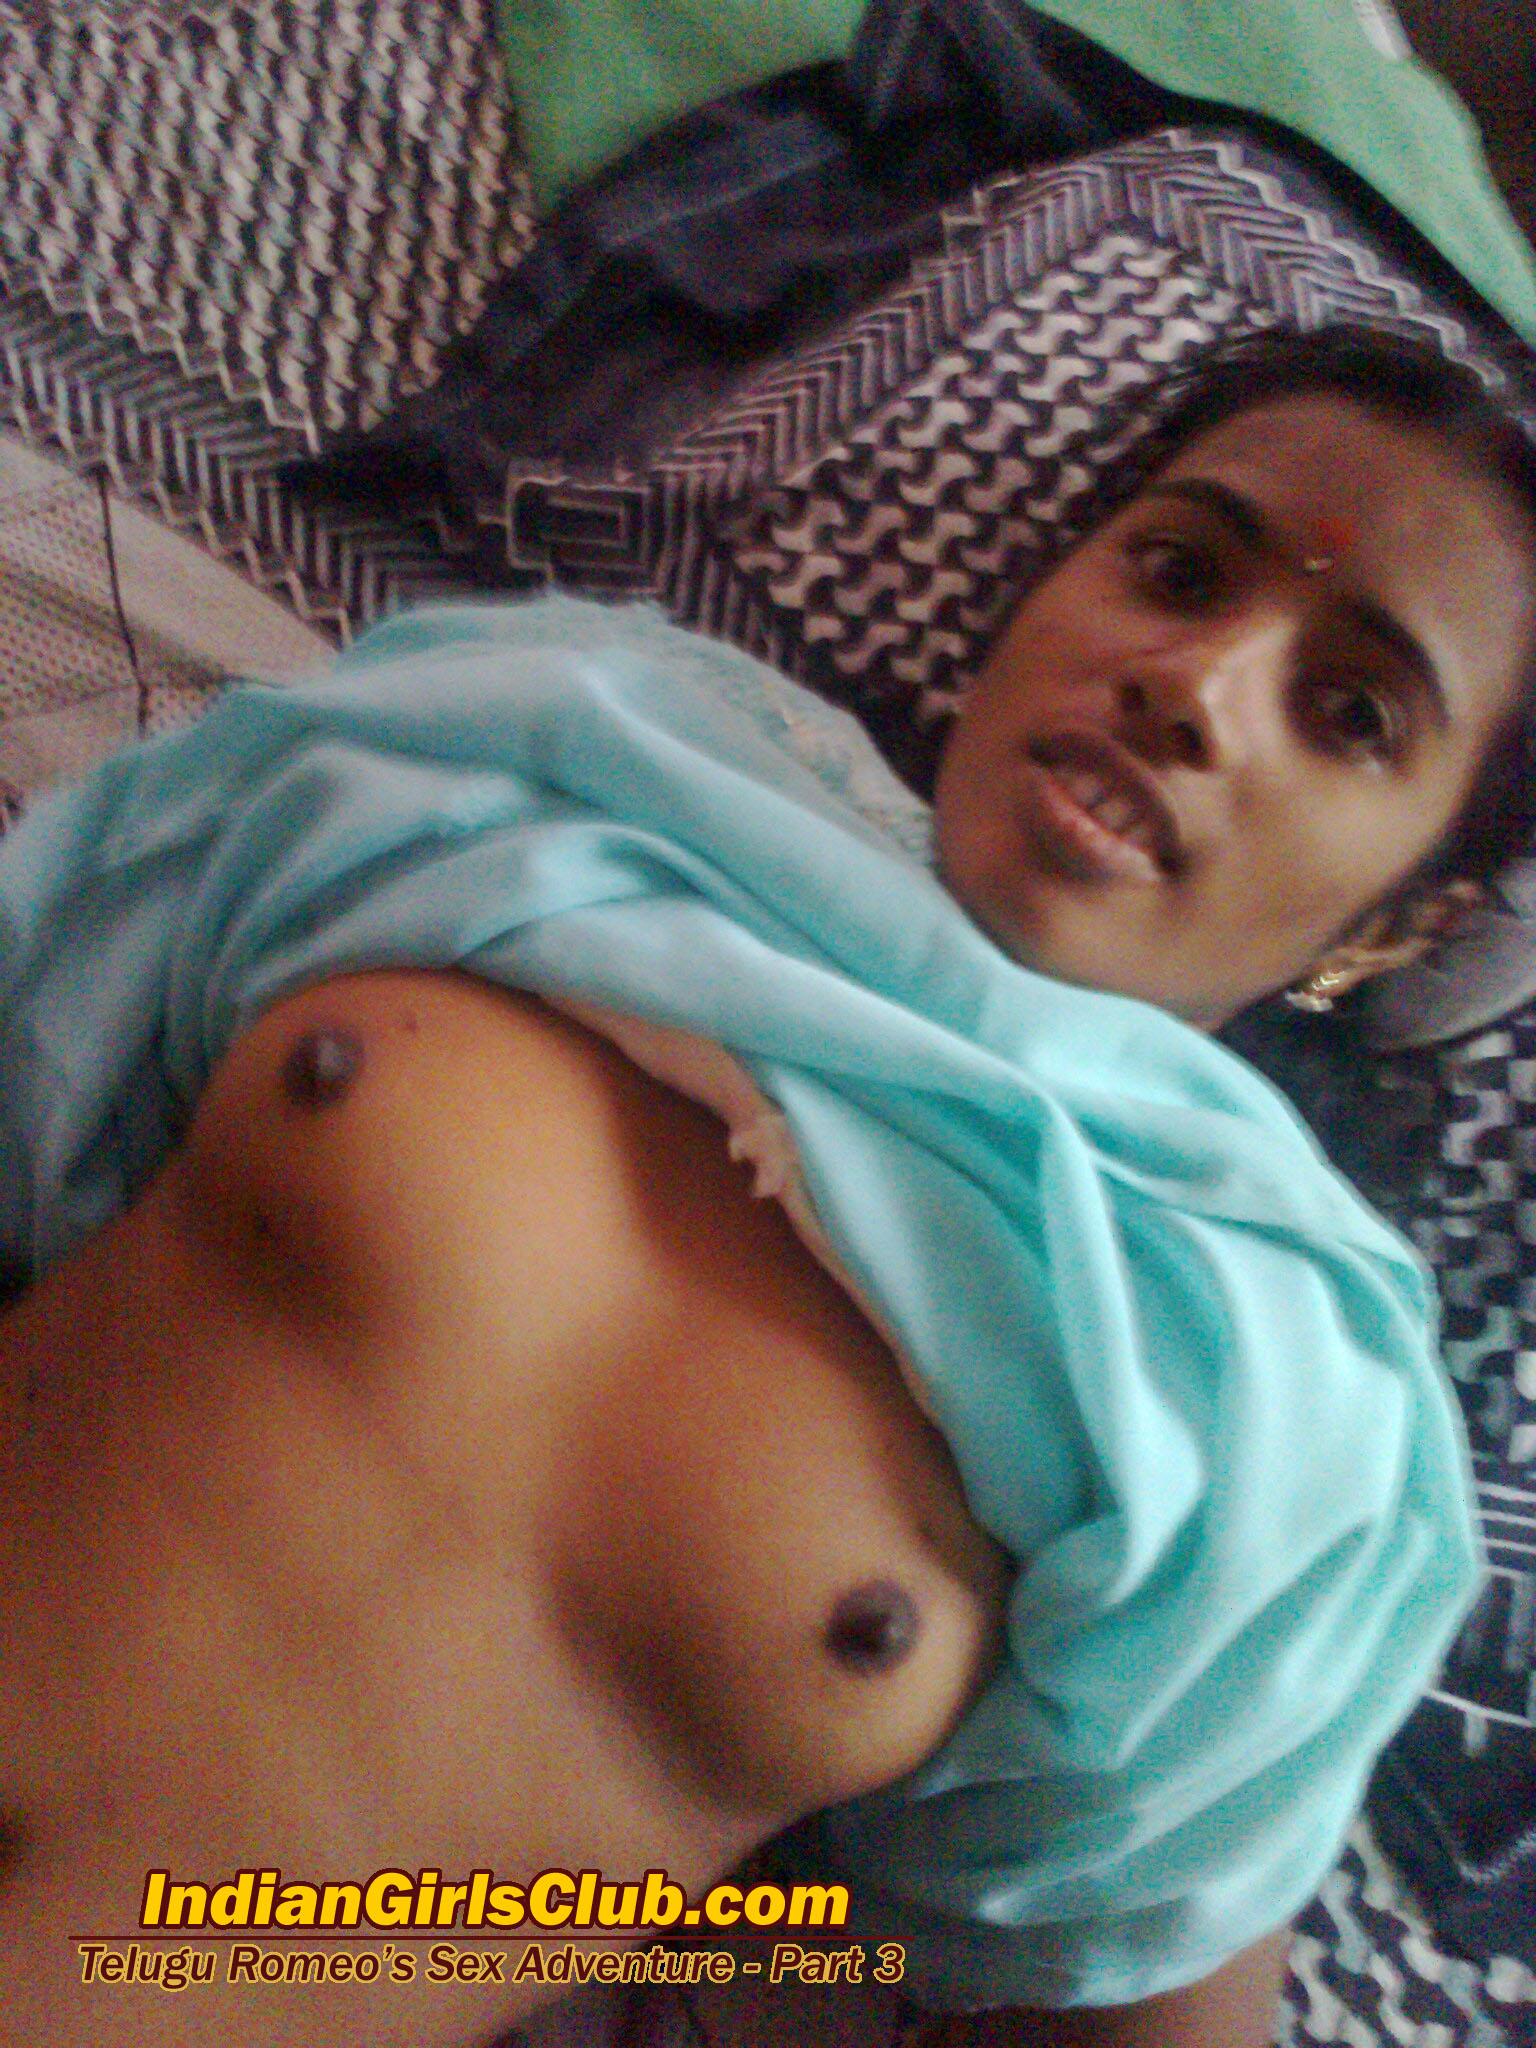 telugu romeo college girls sex 357 - Indian Girls Club Foto Foto